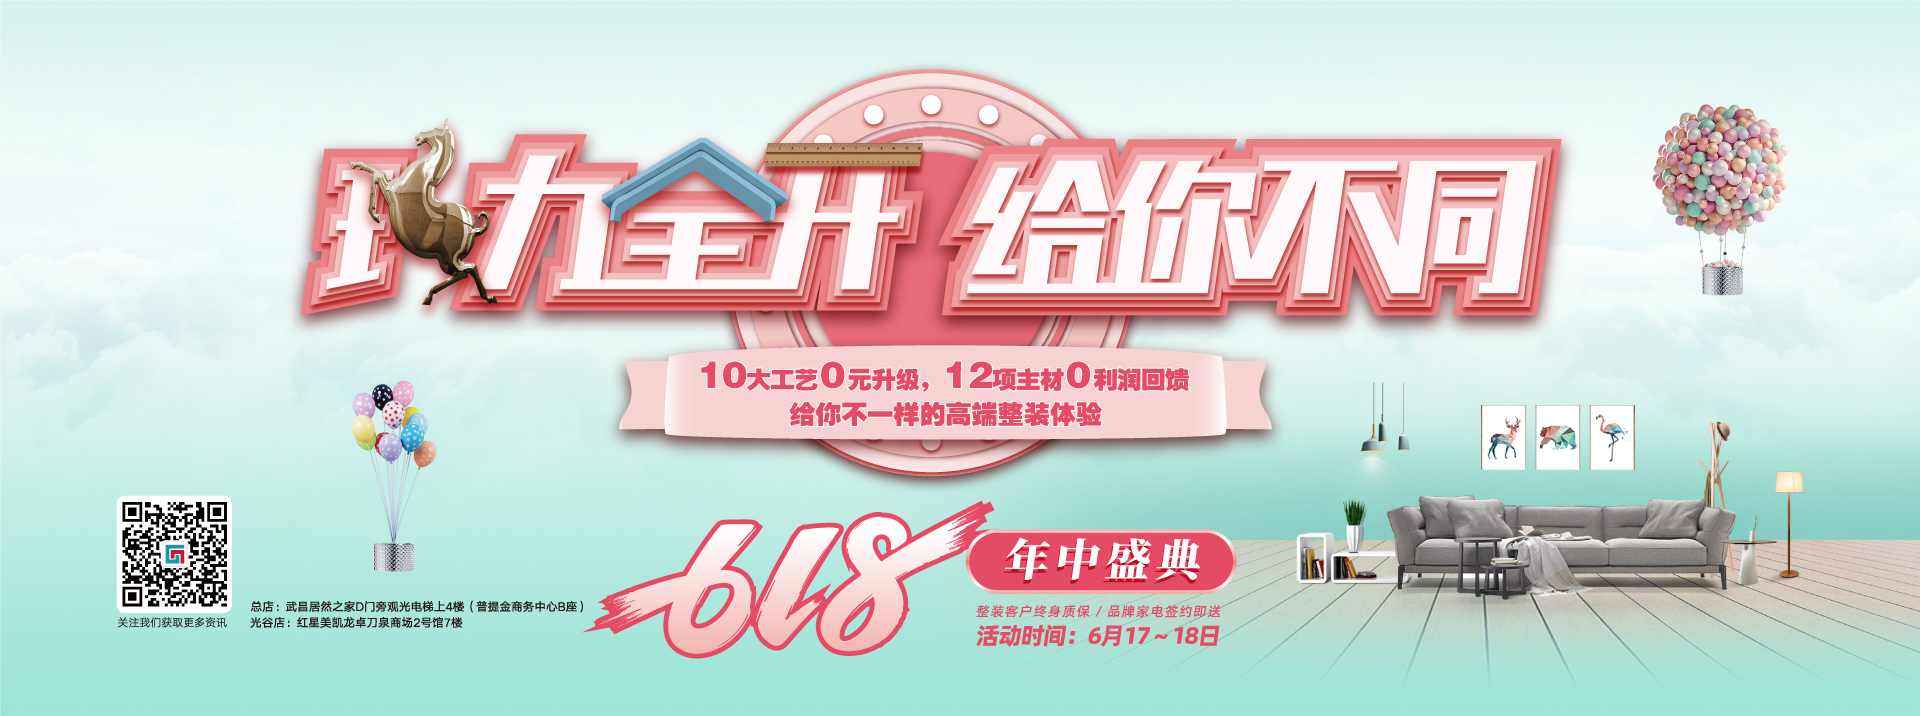 东北操屄嗷嗷叫视频六西格玛装饰活动海报